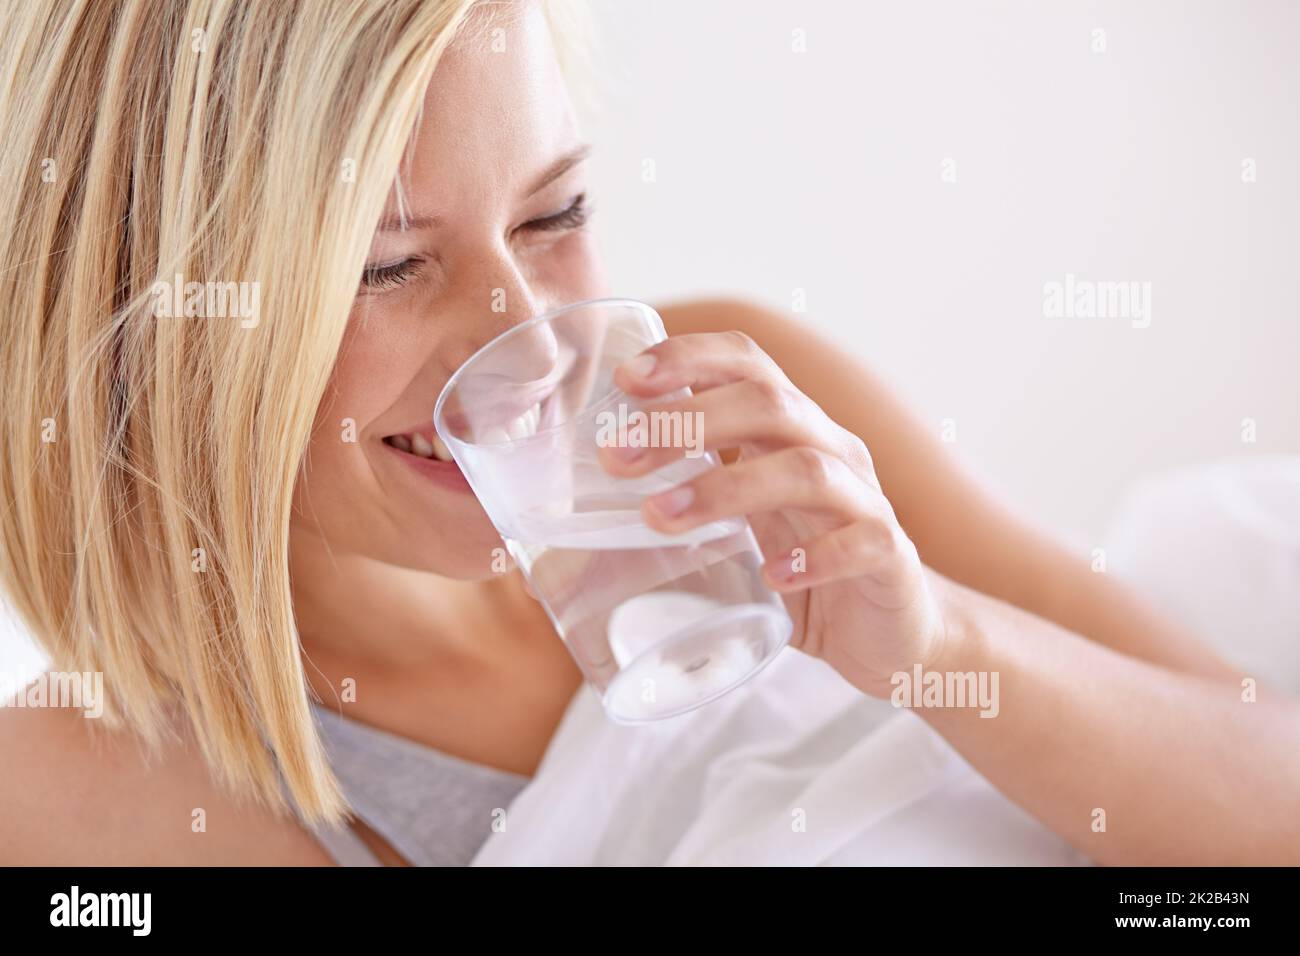 Sie trinkt immer ein Glas Wasser vor dem Bett. Eine junge Frau, die vor dem Bett ein Glas Wasser trinkt. Stockfoto